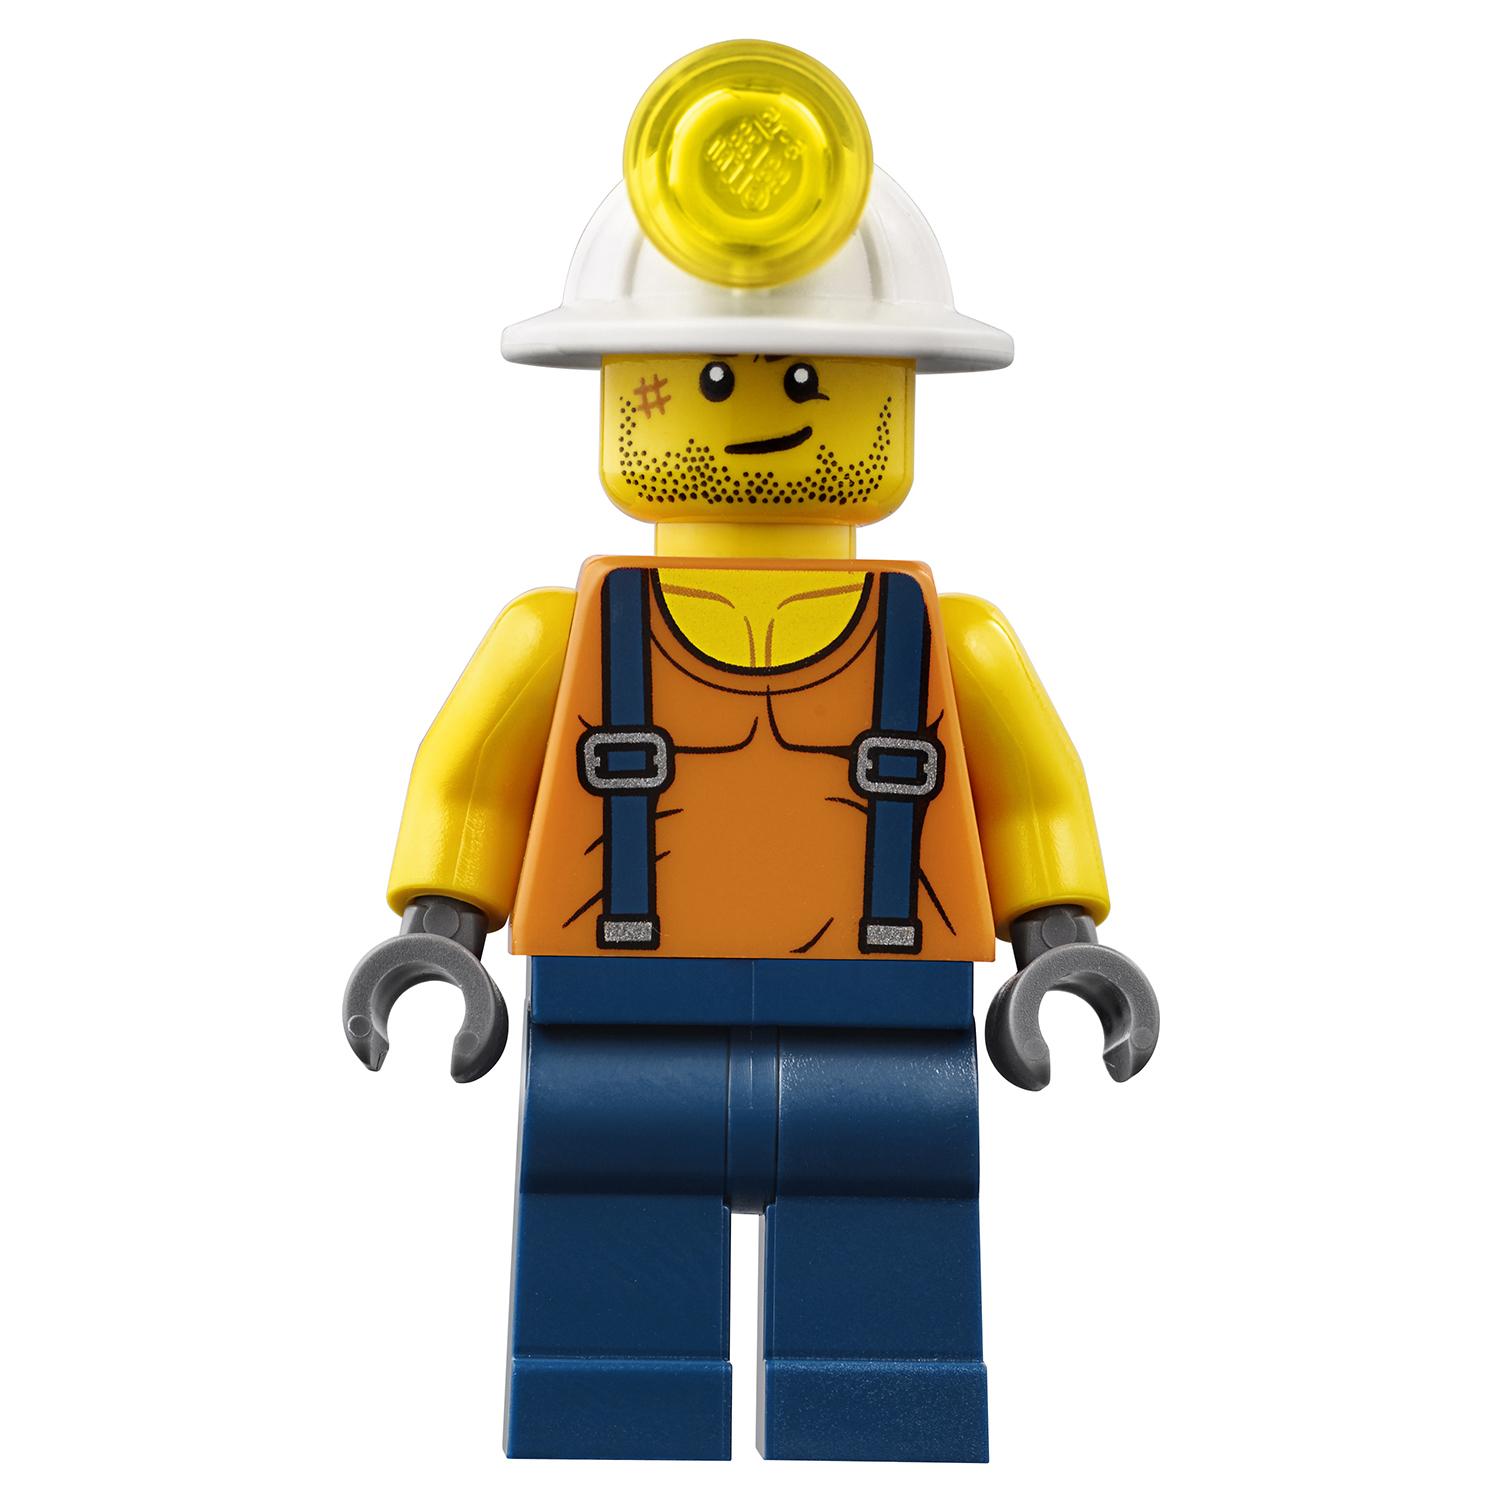 Конструктор из серии Lego City - Трактор для горных работ City Mining  